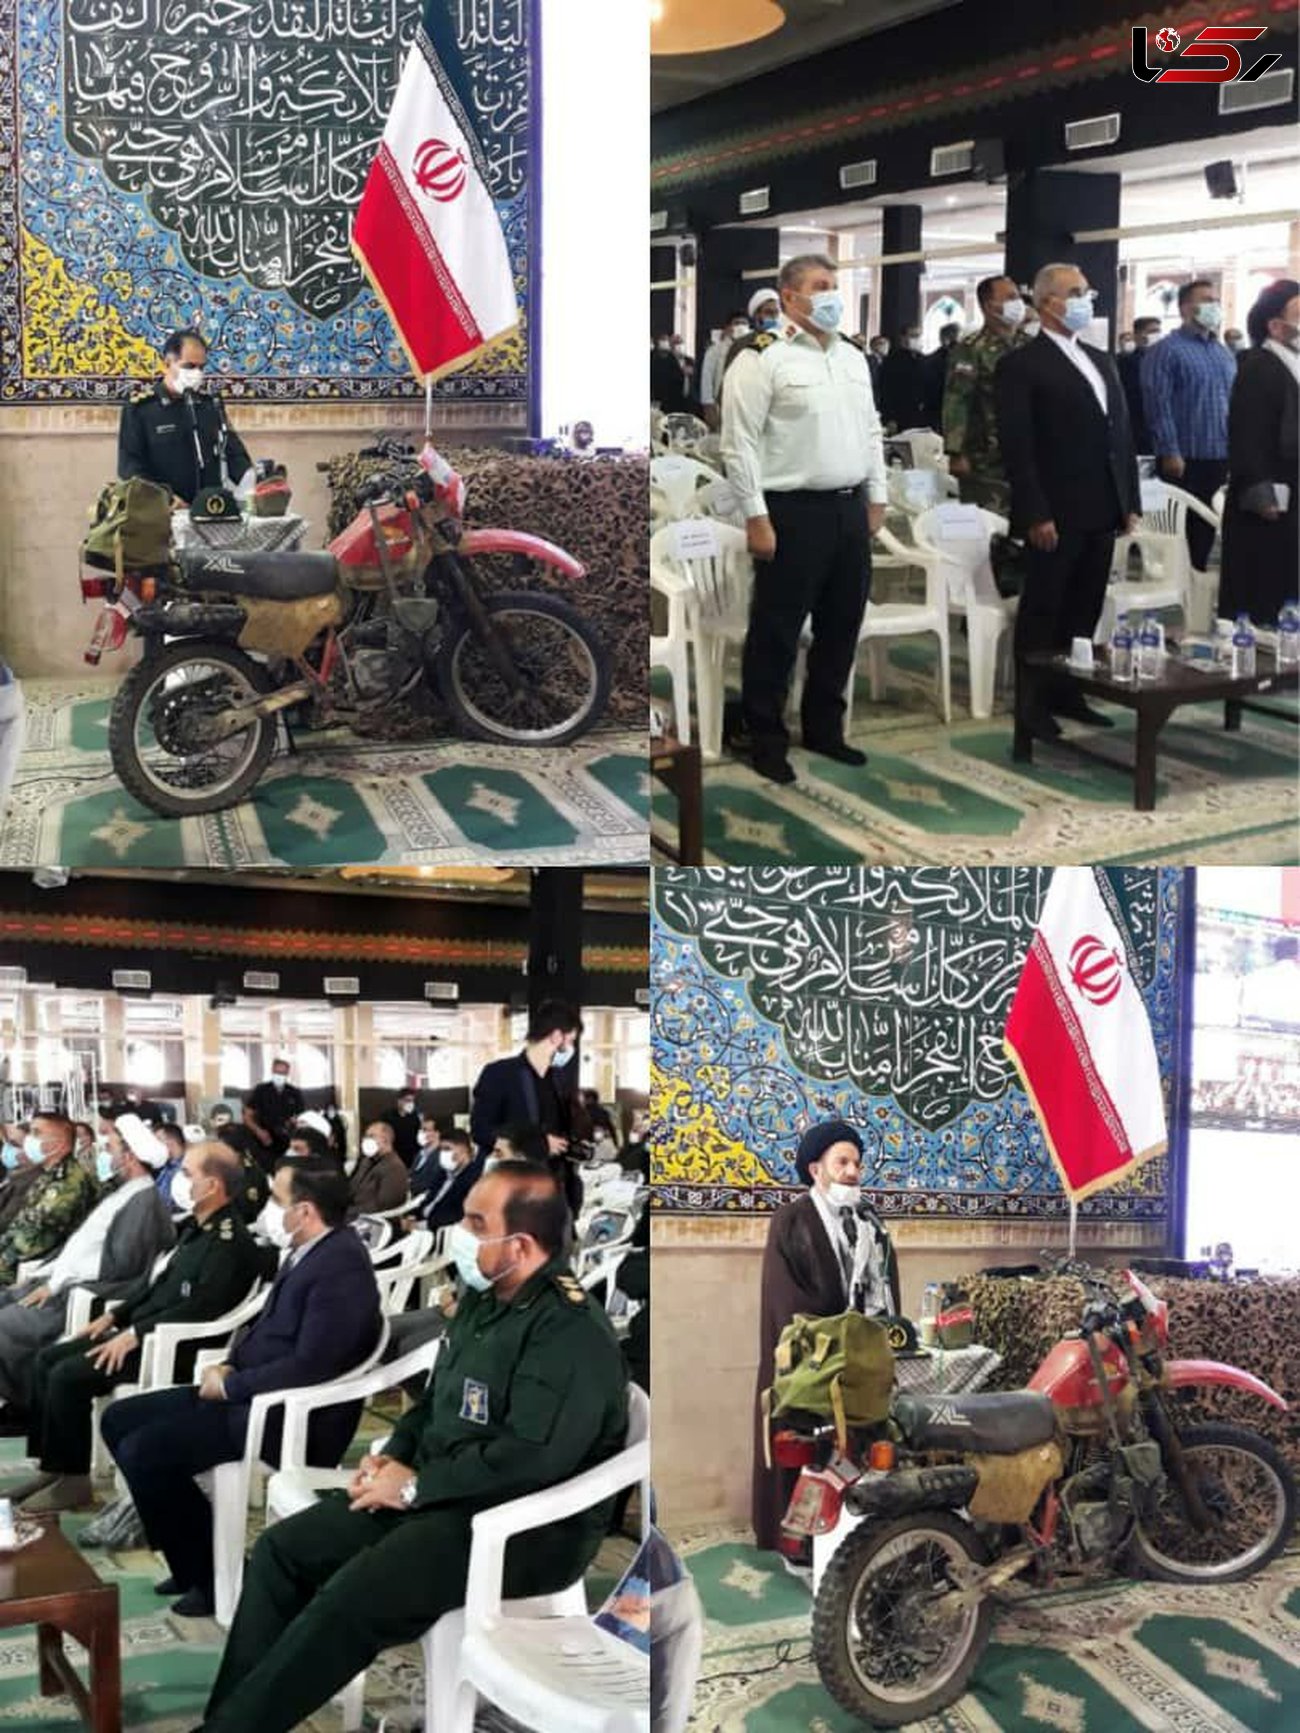 هشت سال دفاع مقدس از مقاطع مهم انقلاب اسلامی است/ تاکید بر کنار زدن قوانین فسادزا 